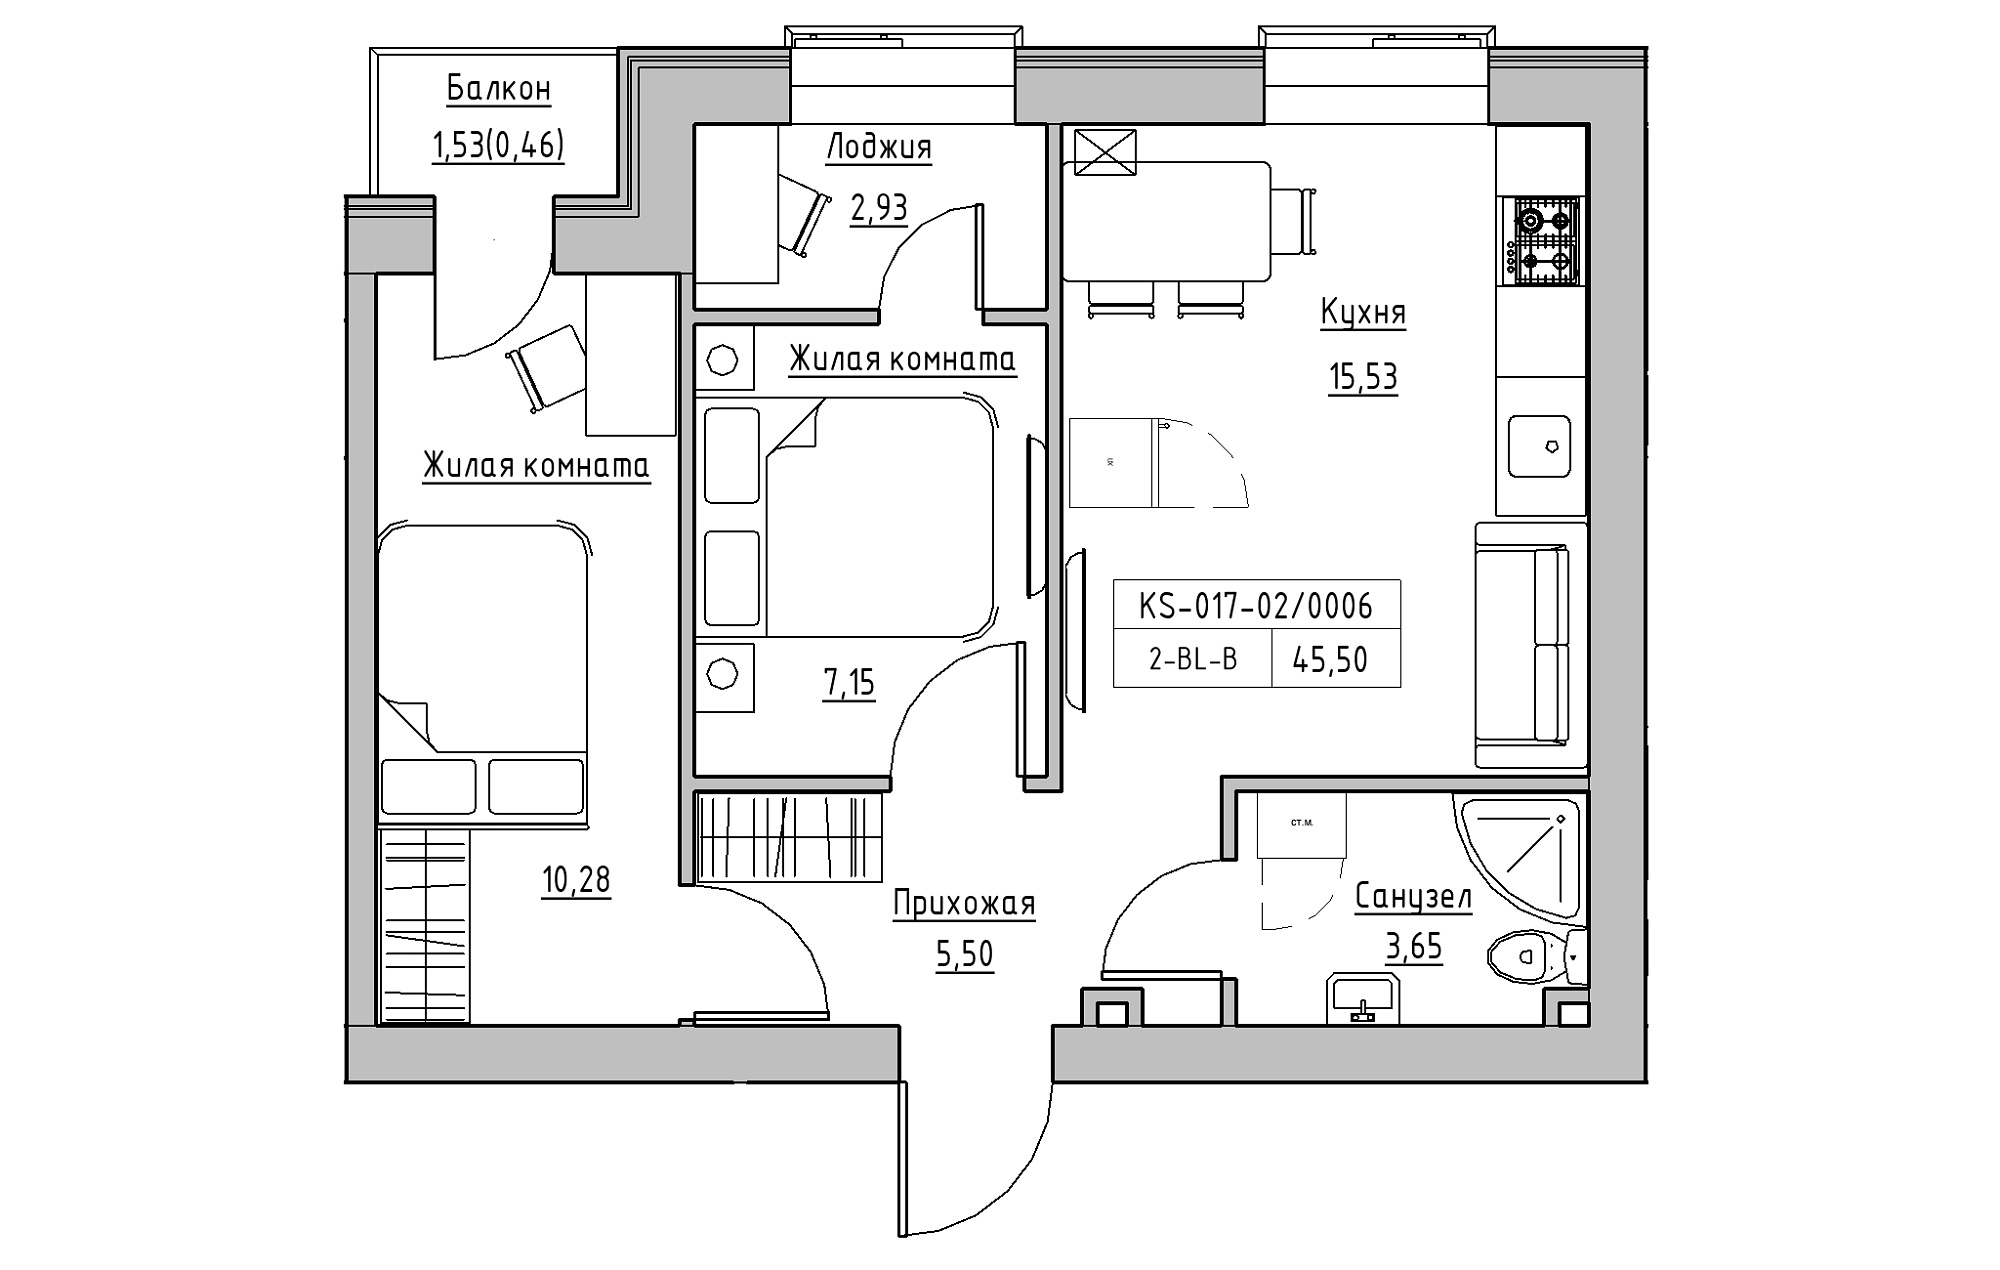 Планування 2-к квартира площею 45.5м2, KS-017-02/0006.